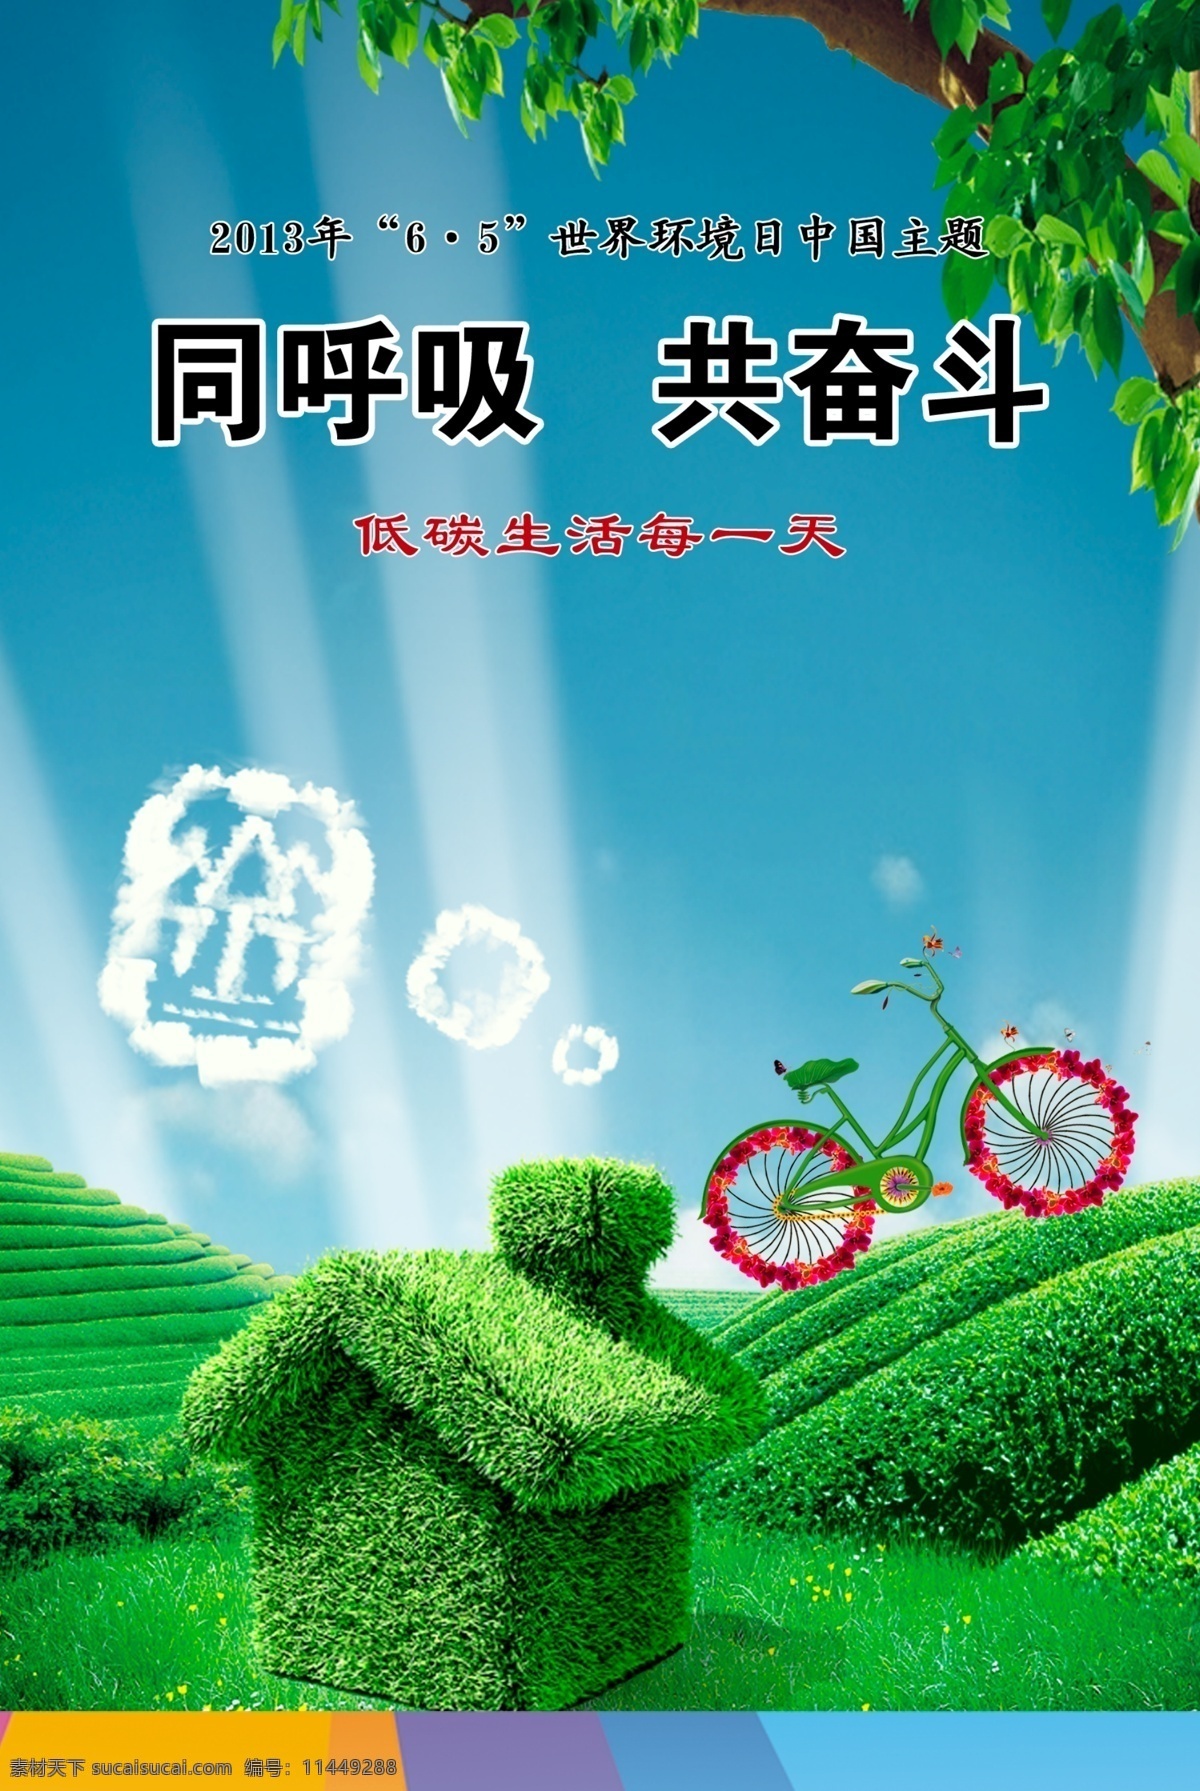 同呼吸 共 奋斗 绿化 环境 环保绿色 绿色环保 世界环境日 共奋斗 环保 绿色 房子 自行车 草地 广告展板 psd素材 红色